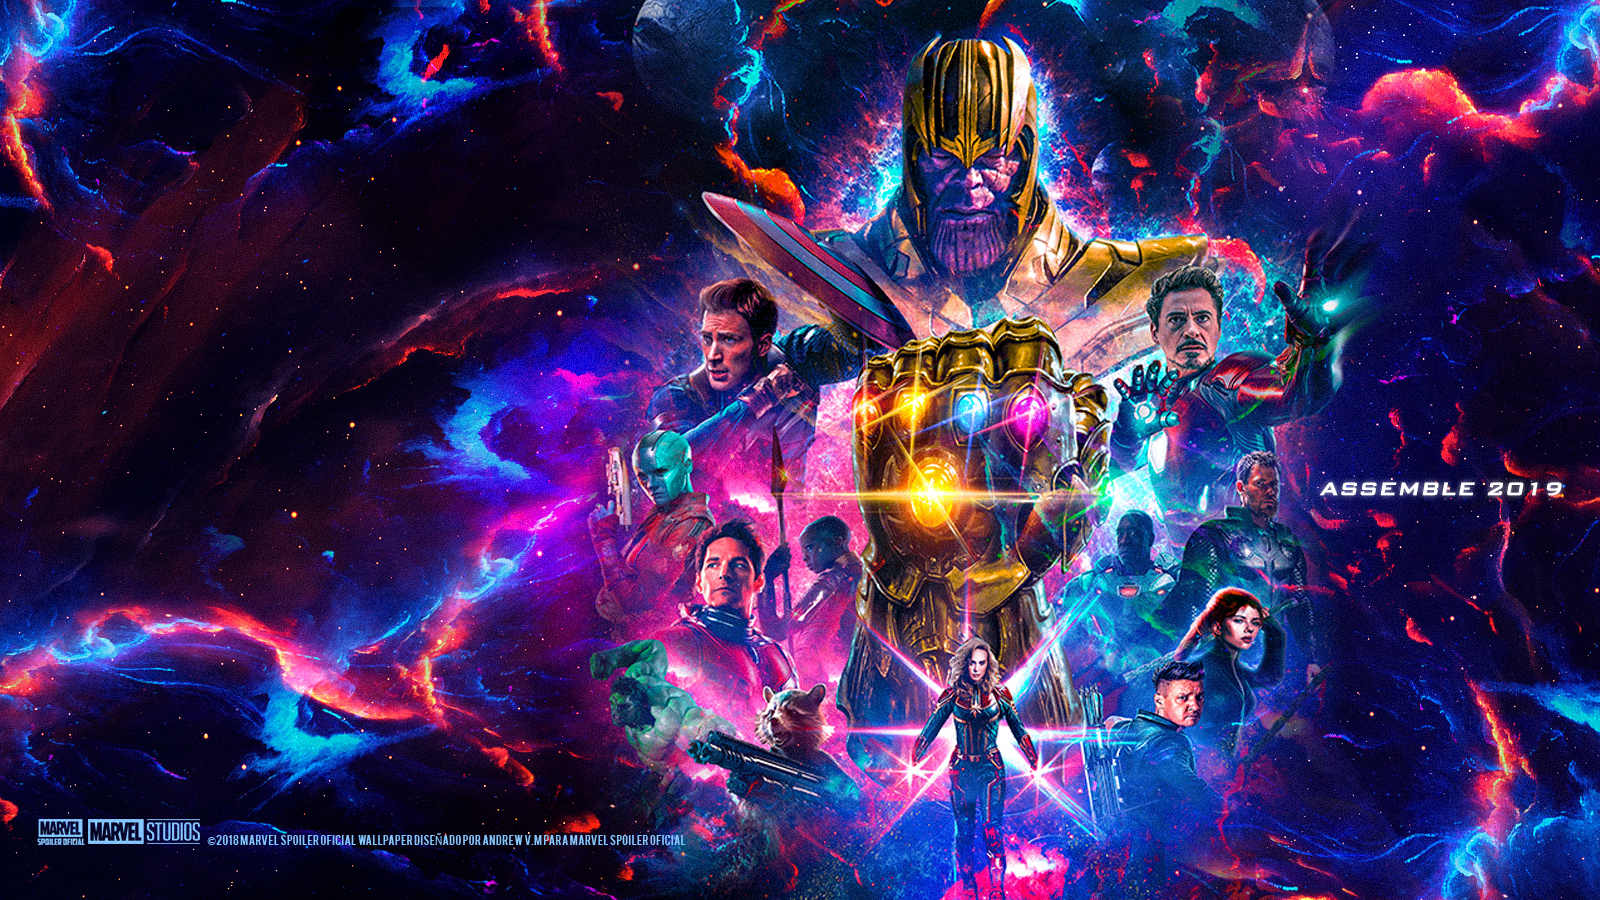 txxx3D Sreams: Avengers 4 Teaser Poster Wallpaper HD (Andrew V.M)